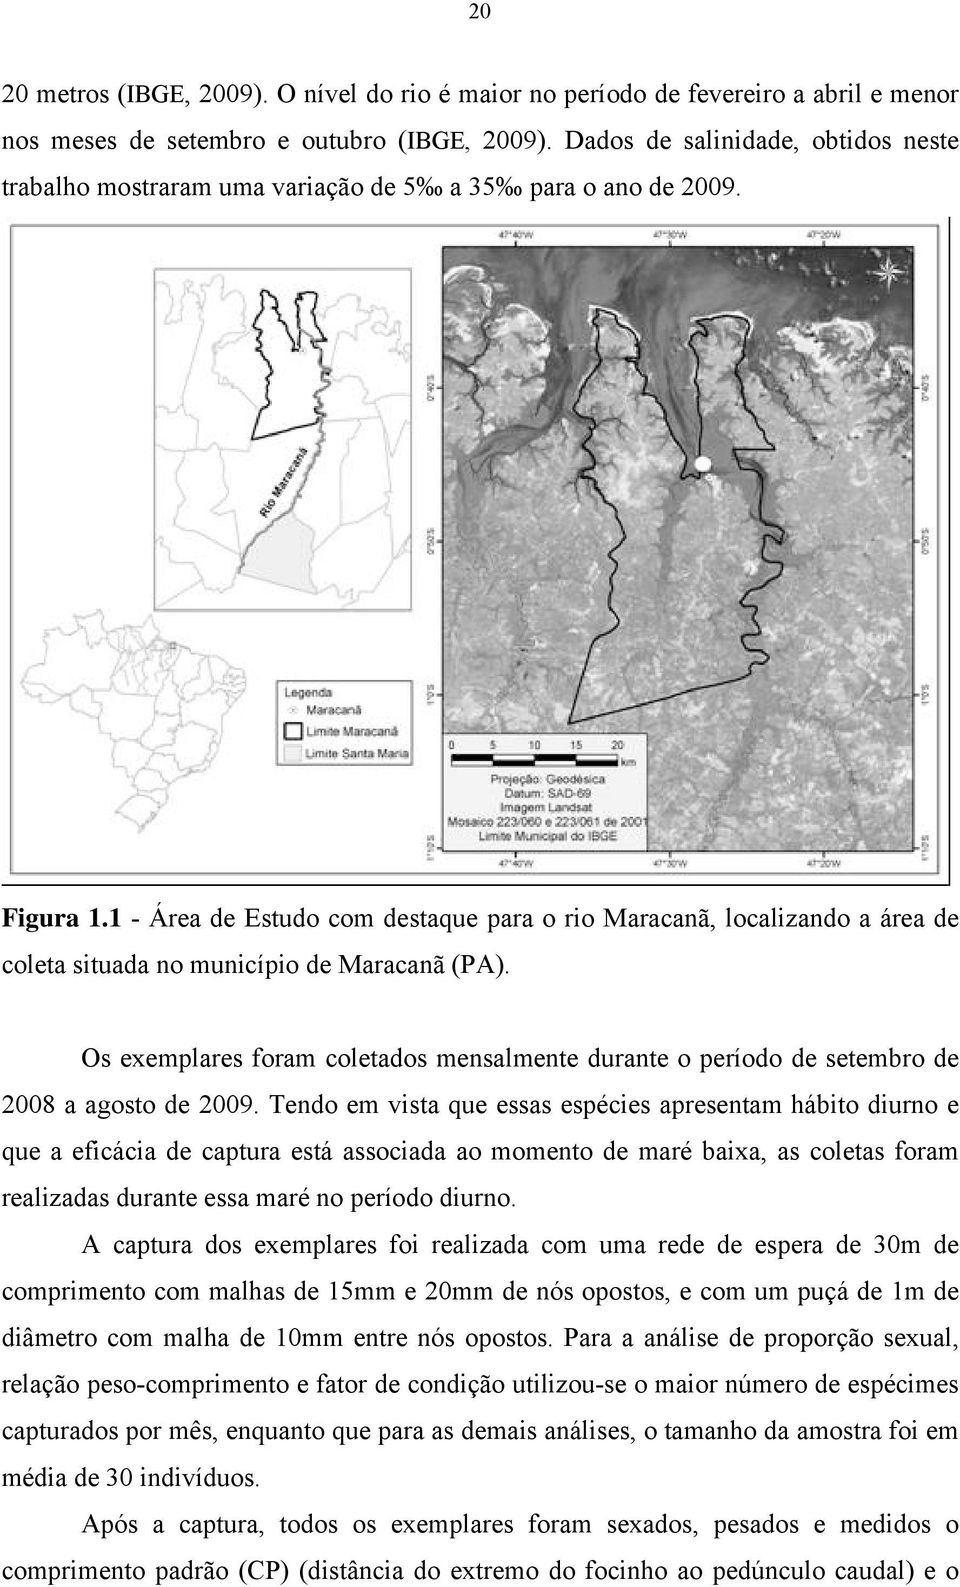 1 - Área de Estudo com destaque para o rio Maracanã, localizando a área de coleta situada no município de Maracanã (PA).